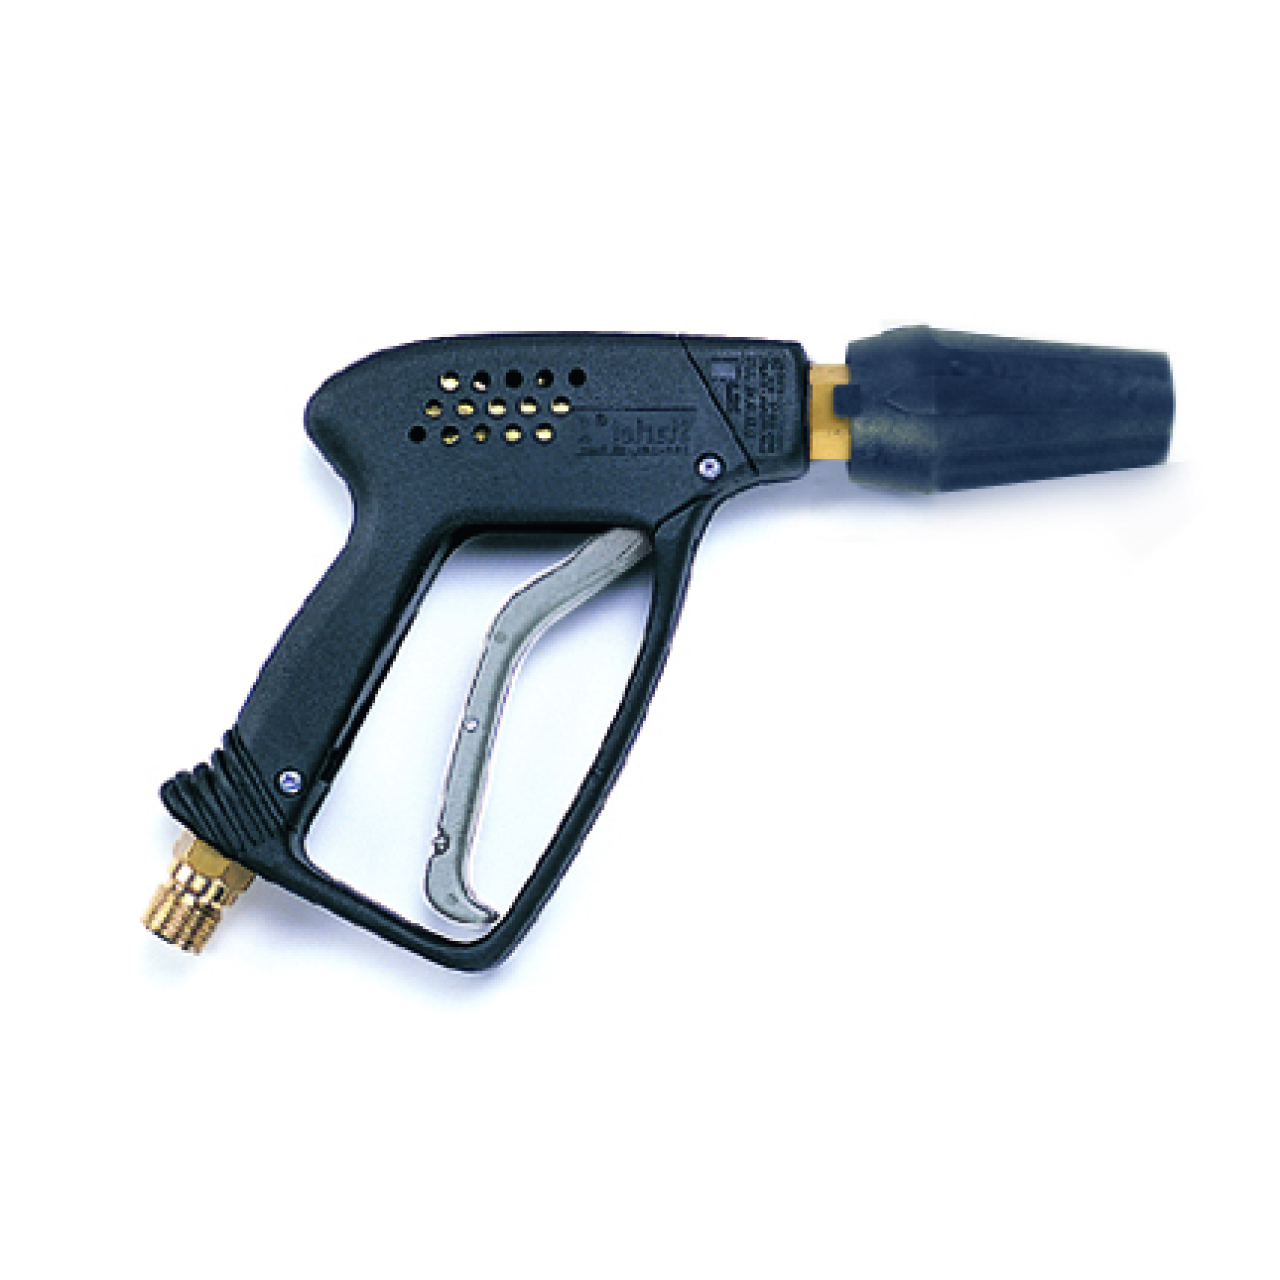 Sicherheits-Abschaltpistole Starlet, kurze Ausführung